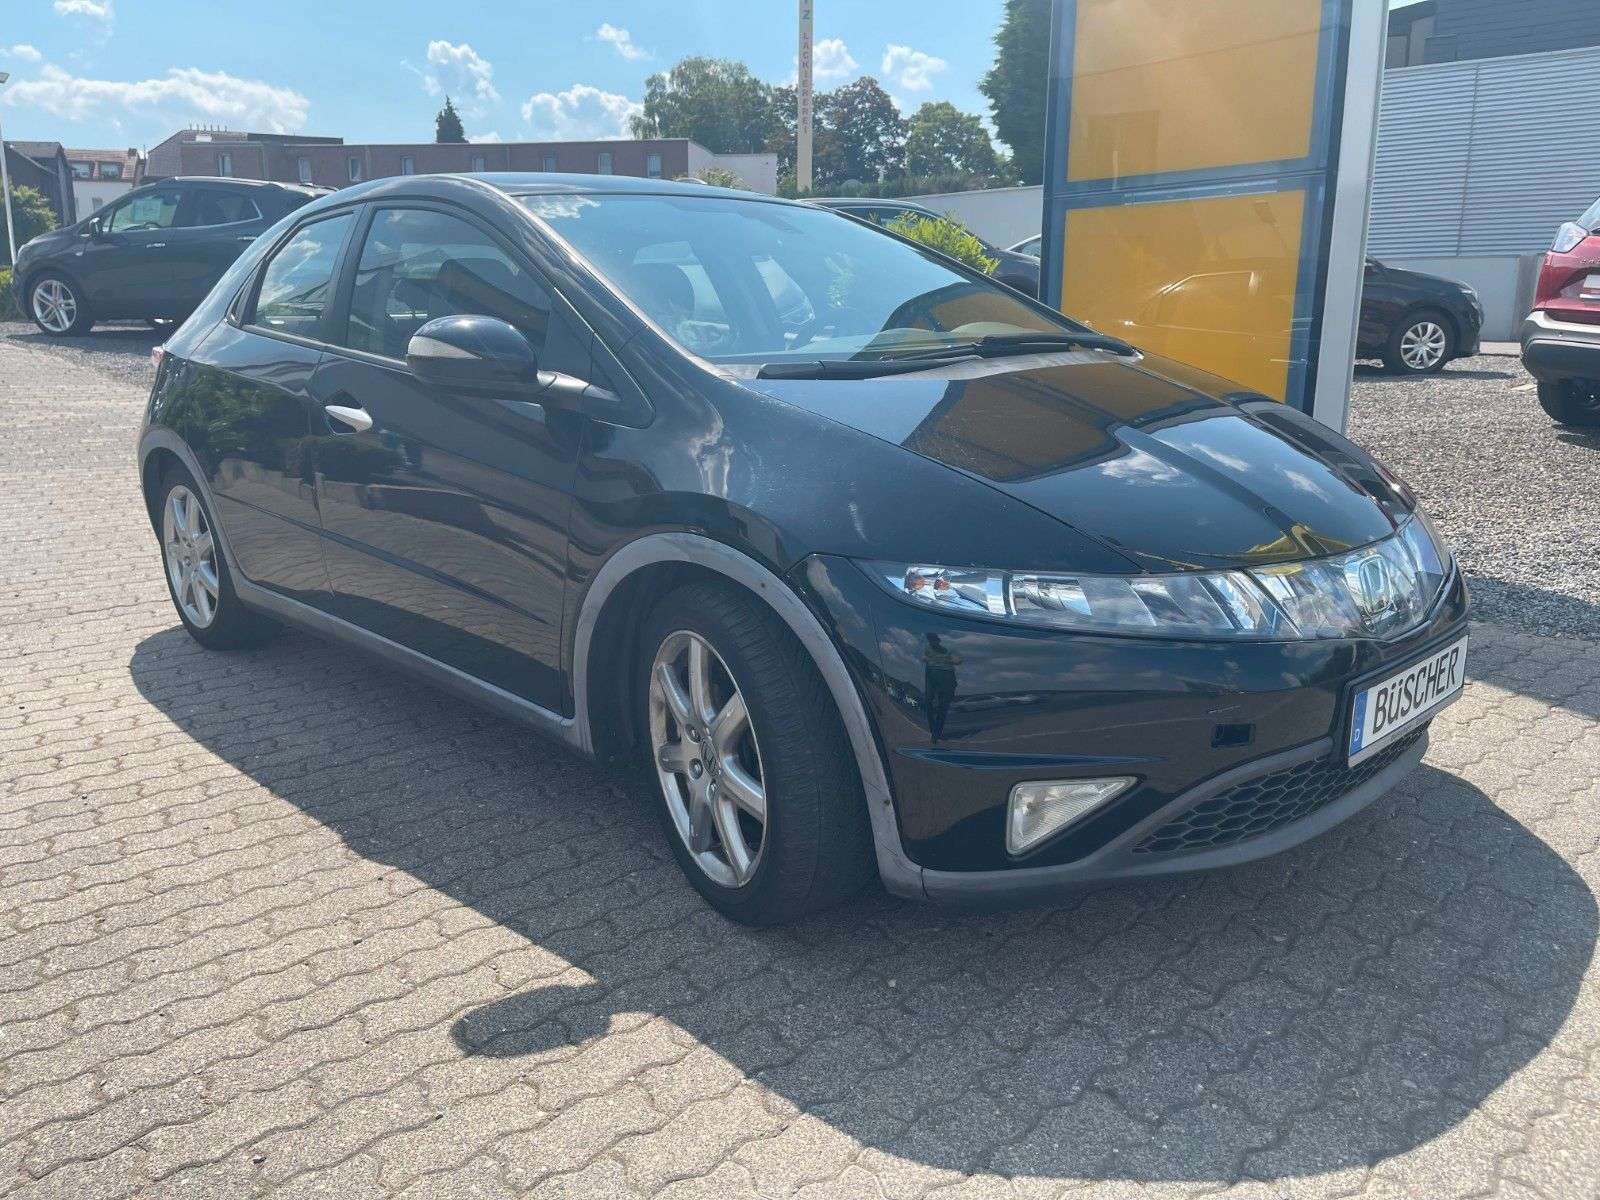 Honda Civic Sedan in Black used in Stolberg for € 3,450.-